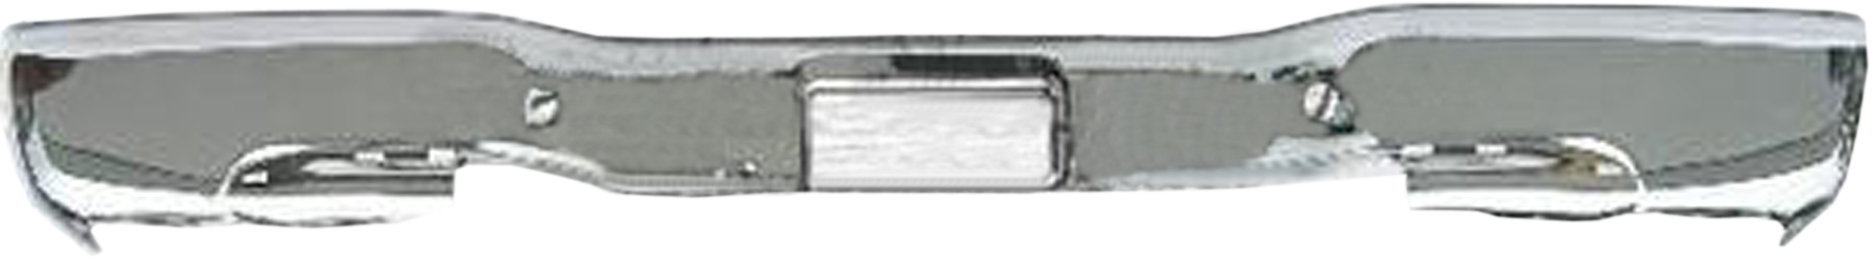 Aftermarket METAL REAR BUMPERS for GMC - SIERRA 1500 CLASSIC, SIERRA 1500 CLASSIC,07-07,Rear bumper face bar